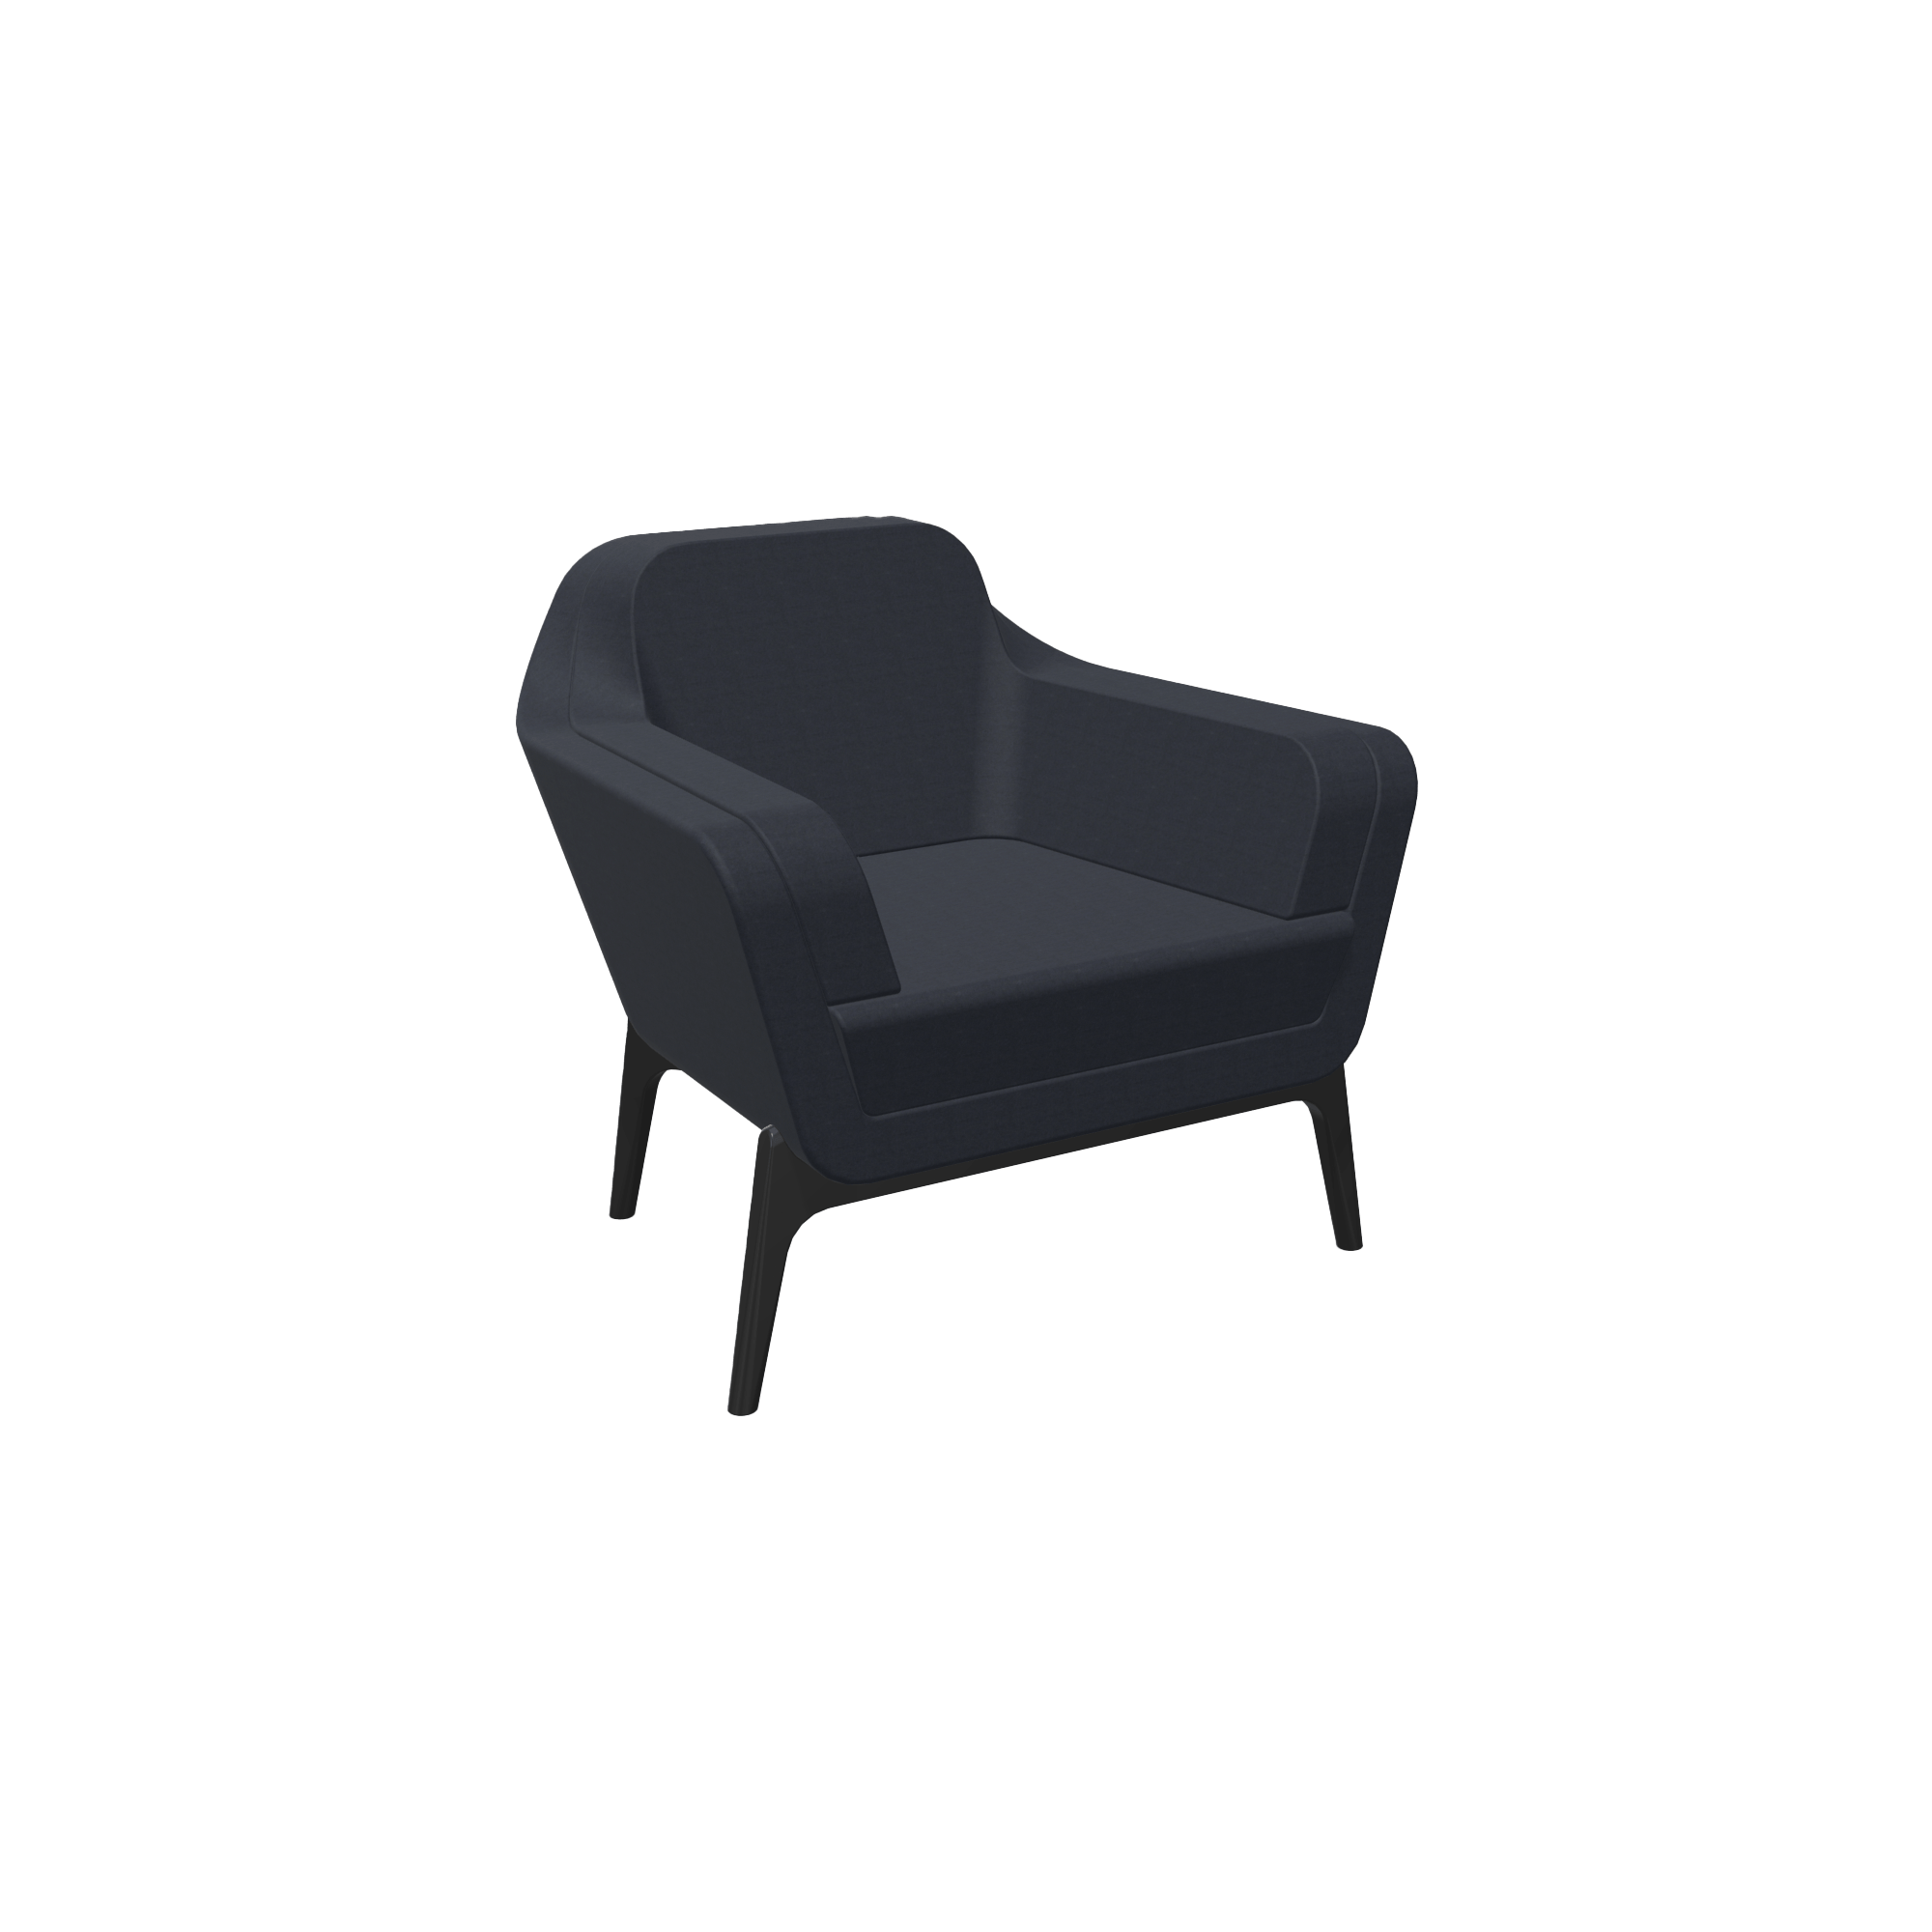 A black chair